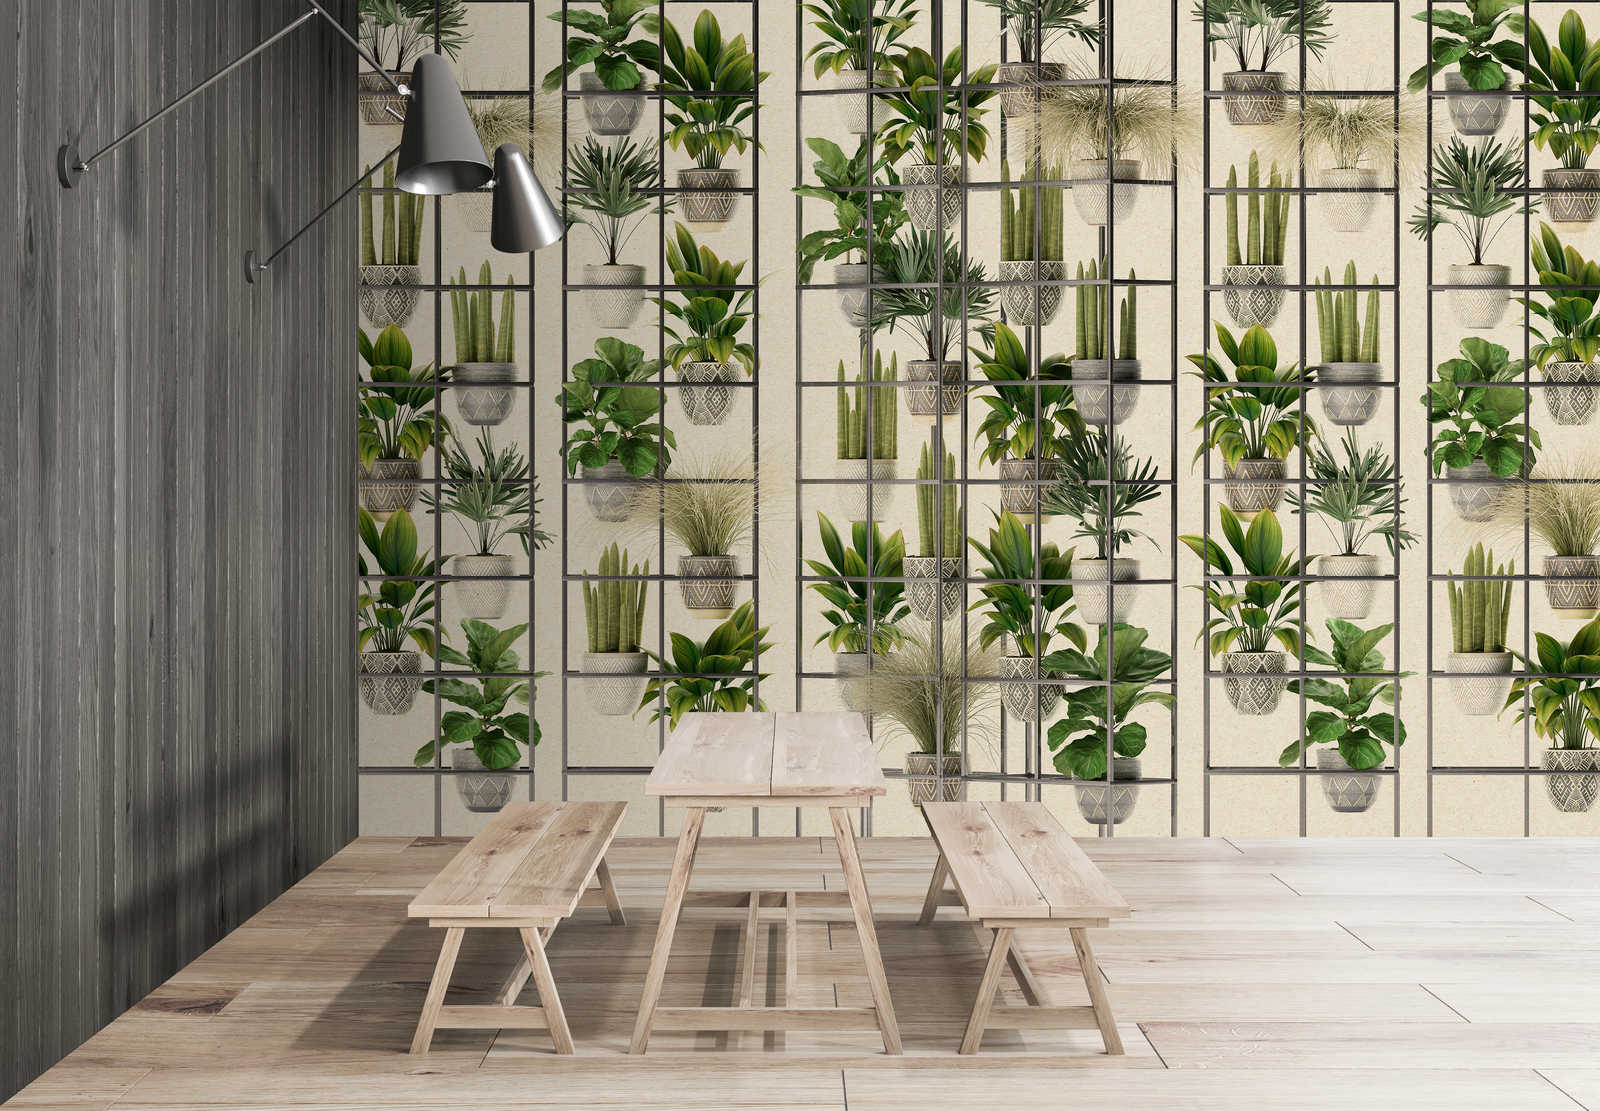             Plant Shop 2 - Papier peint panoramique mur de plantes modernes en vert & gris
        